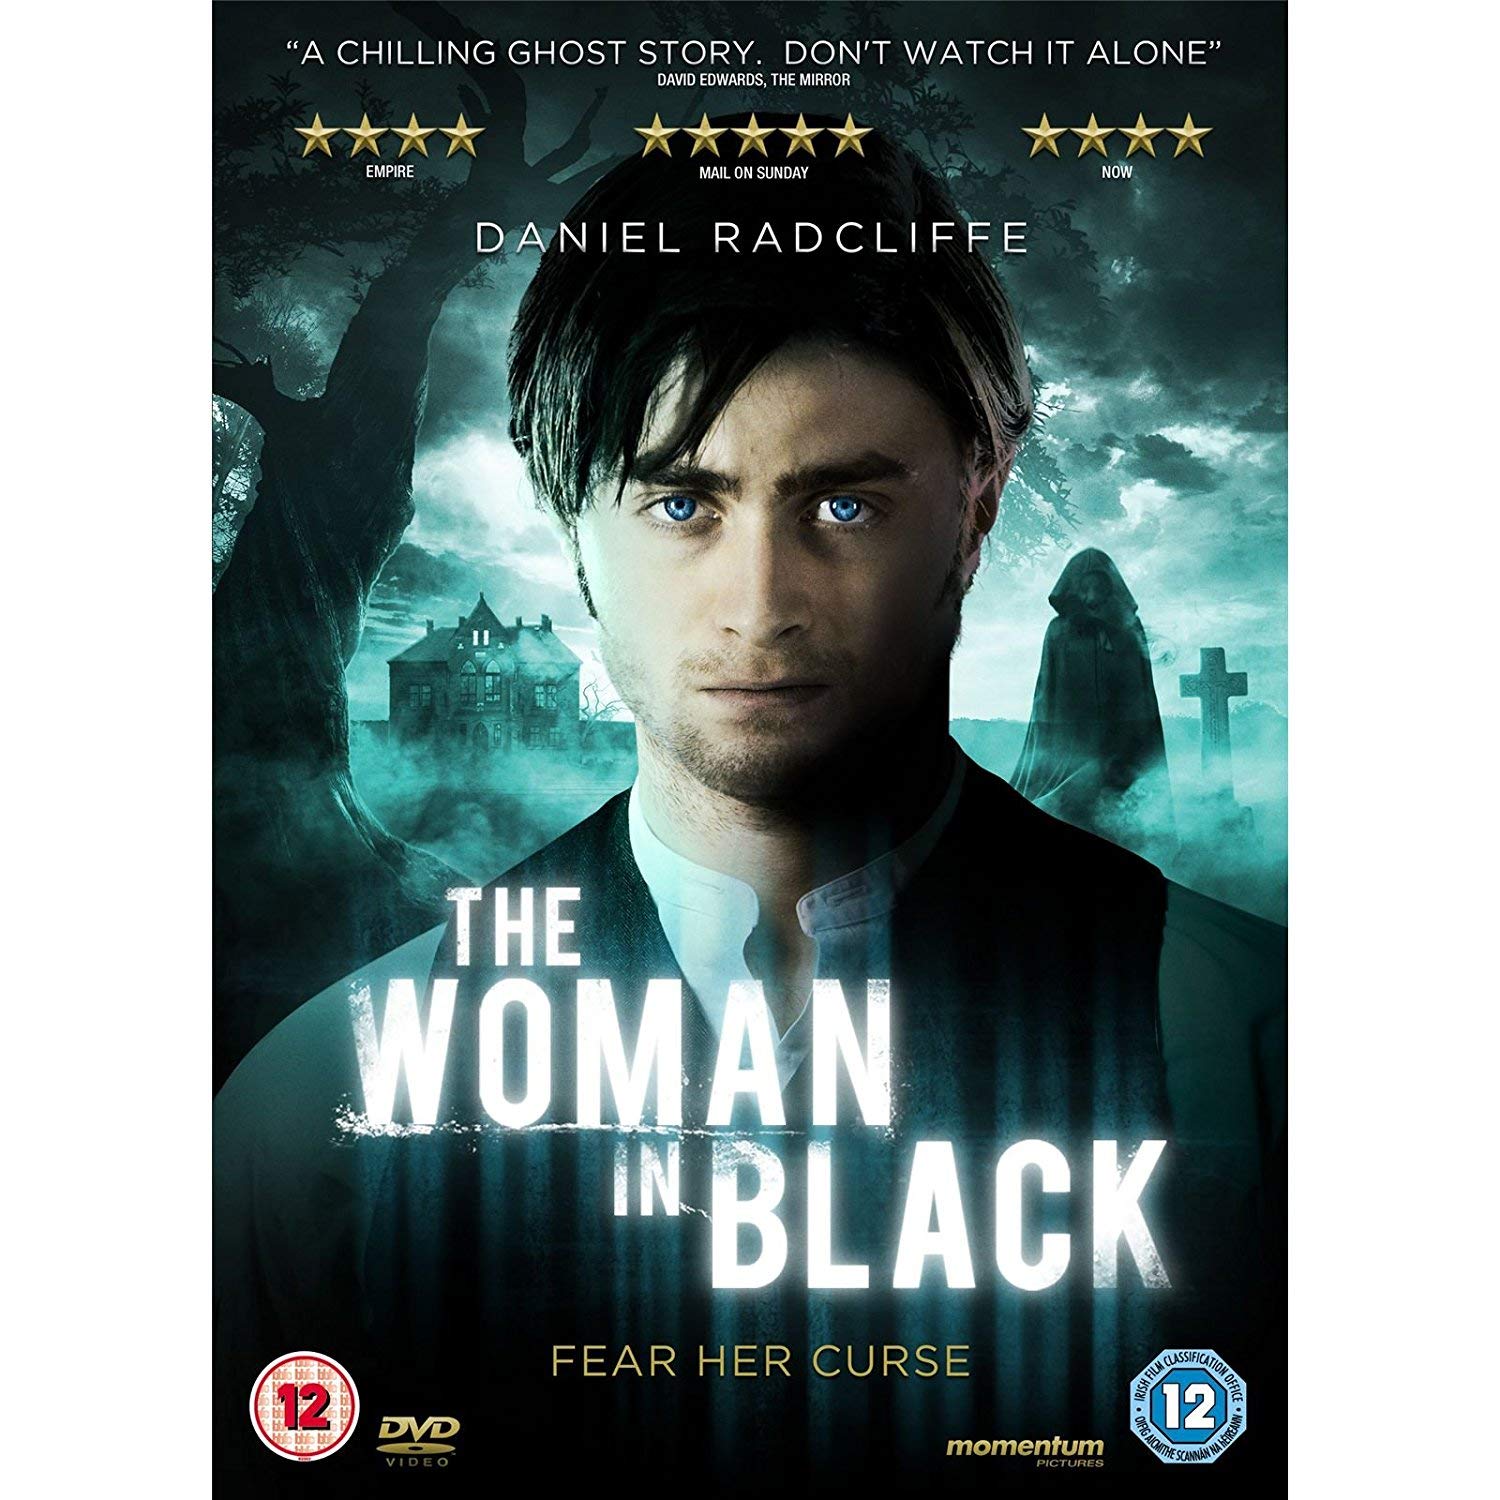 The woman in black dvd blu